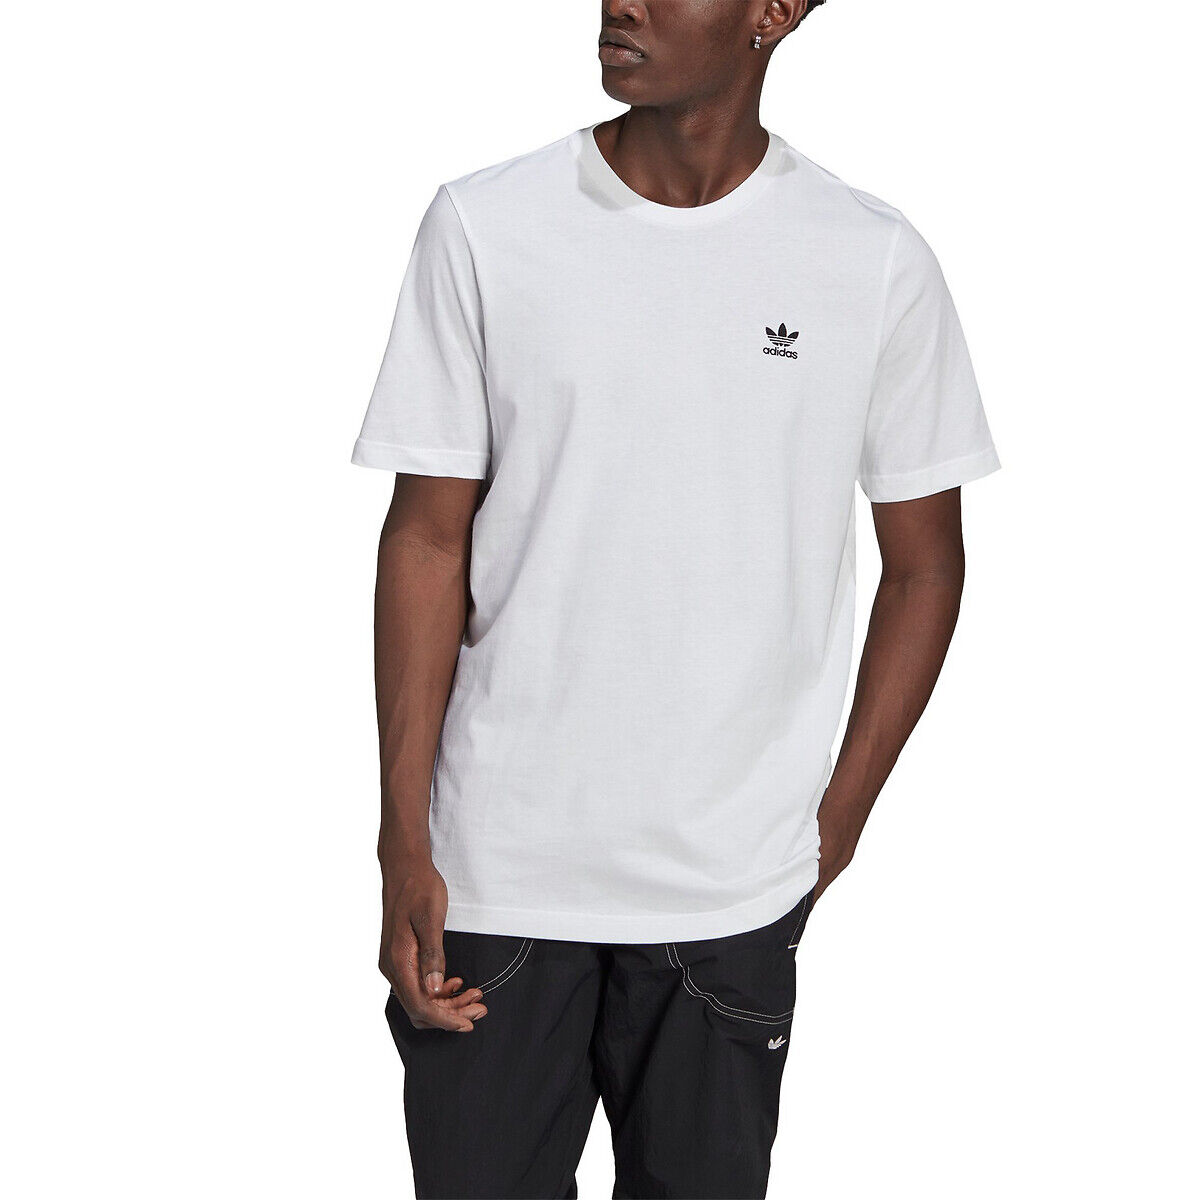 Adidas T-Shirt mit kleinem Trefoil-Logo WEISS